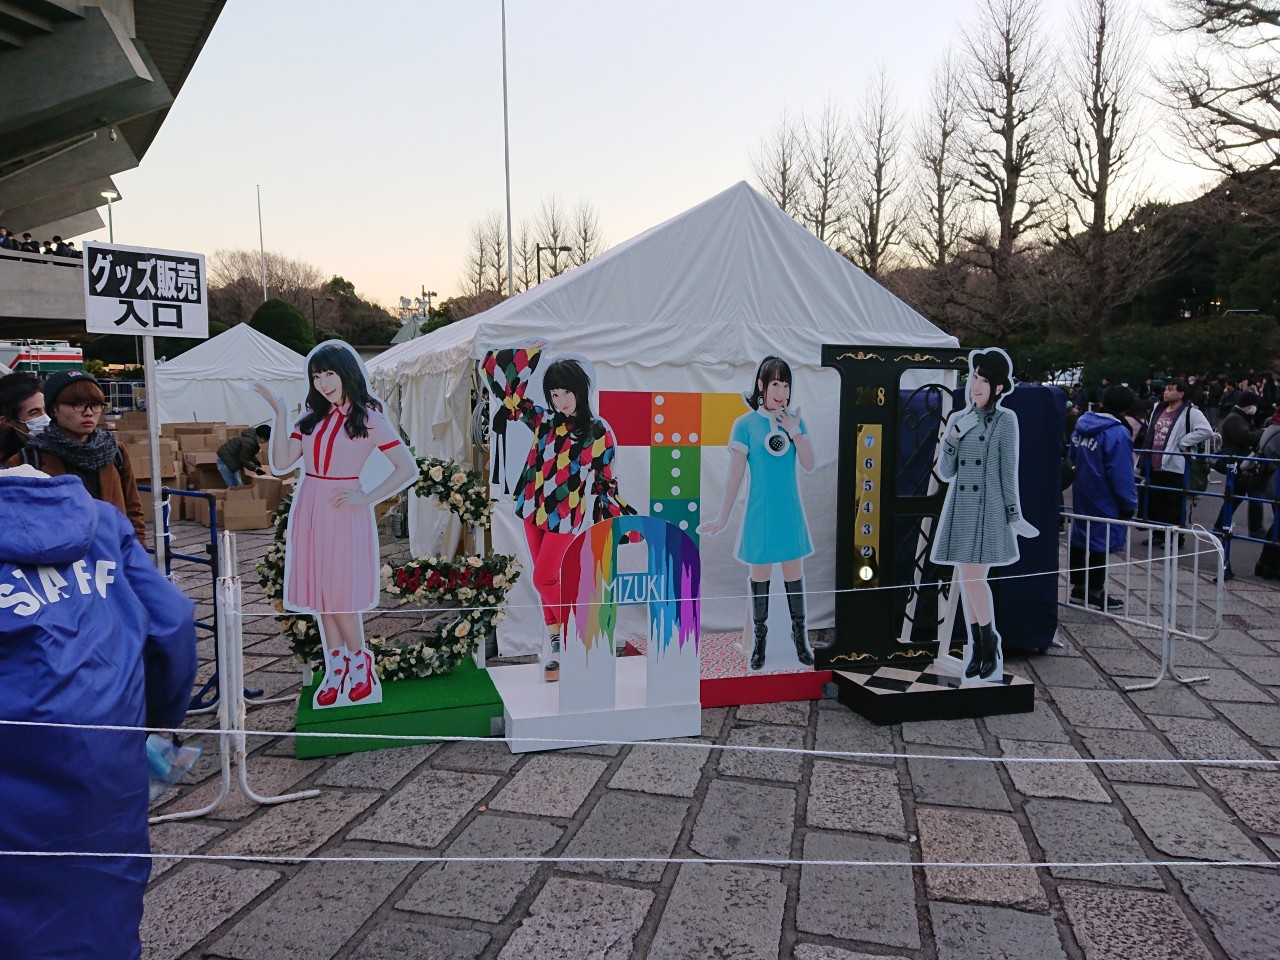 NANA MIZUKI LIVE GATE 2018